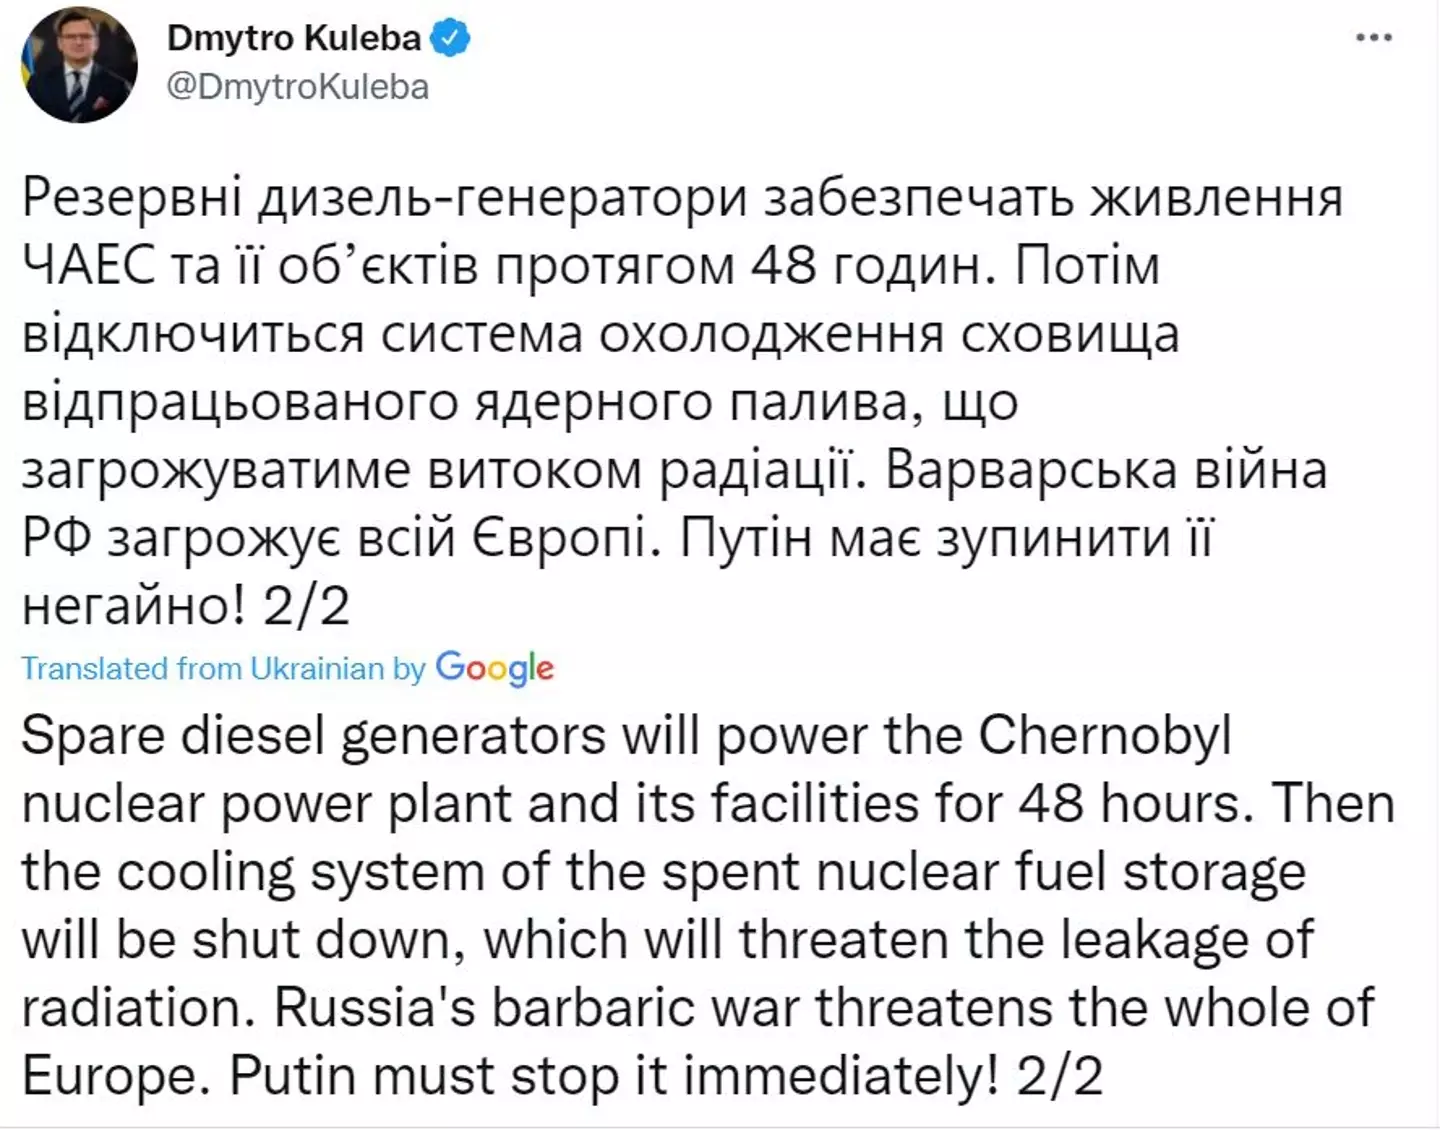 Ukrainian foreign minister warns of leak (Dmytro Kuleba/Twitter)